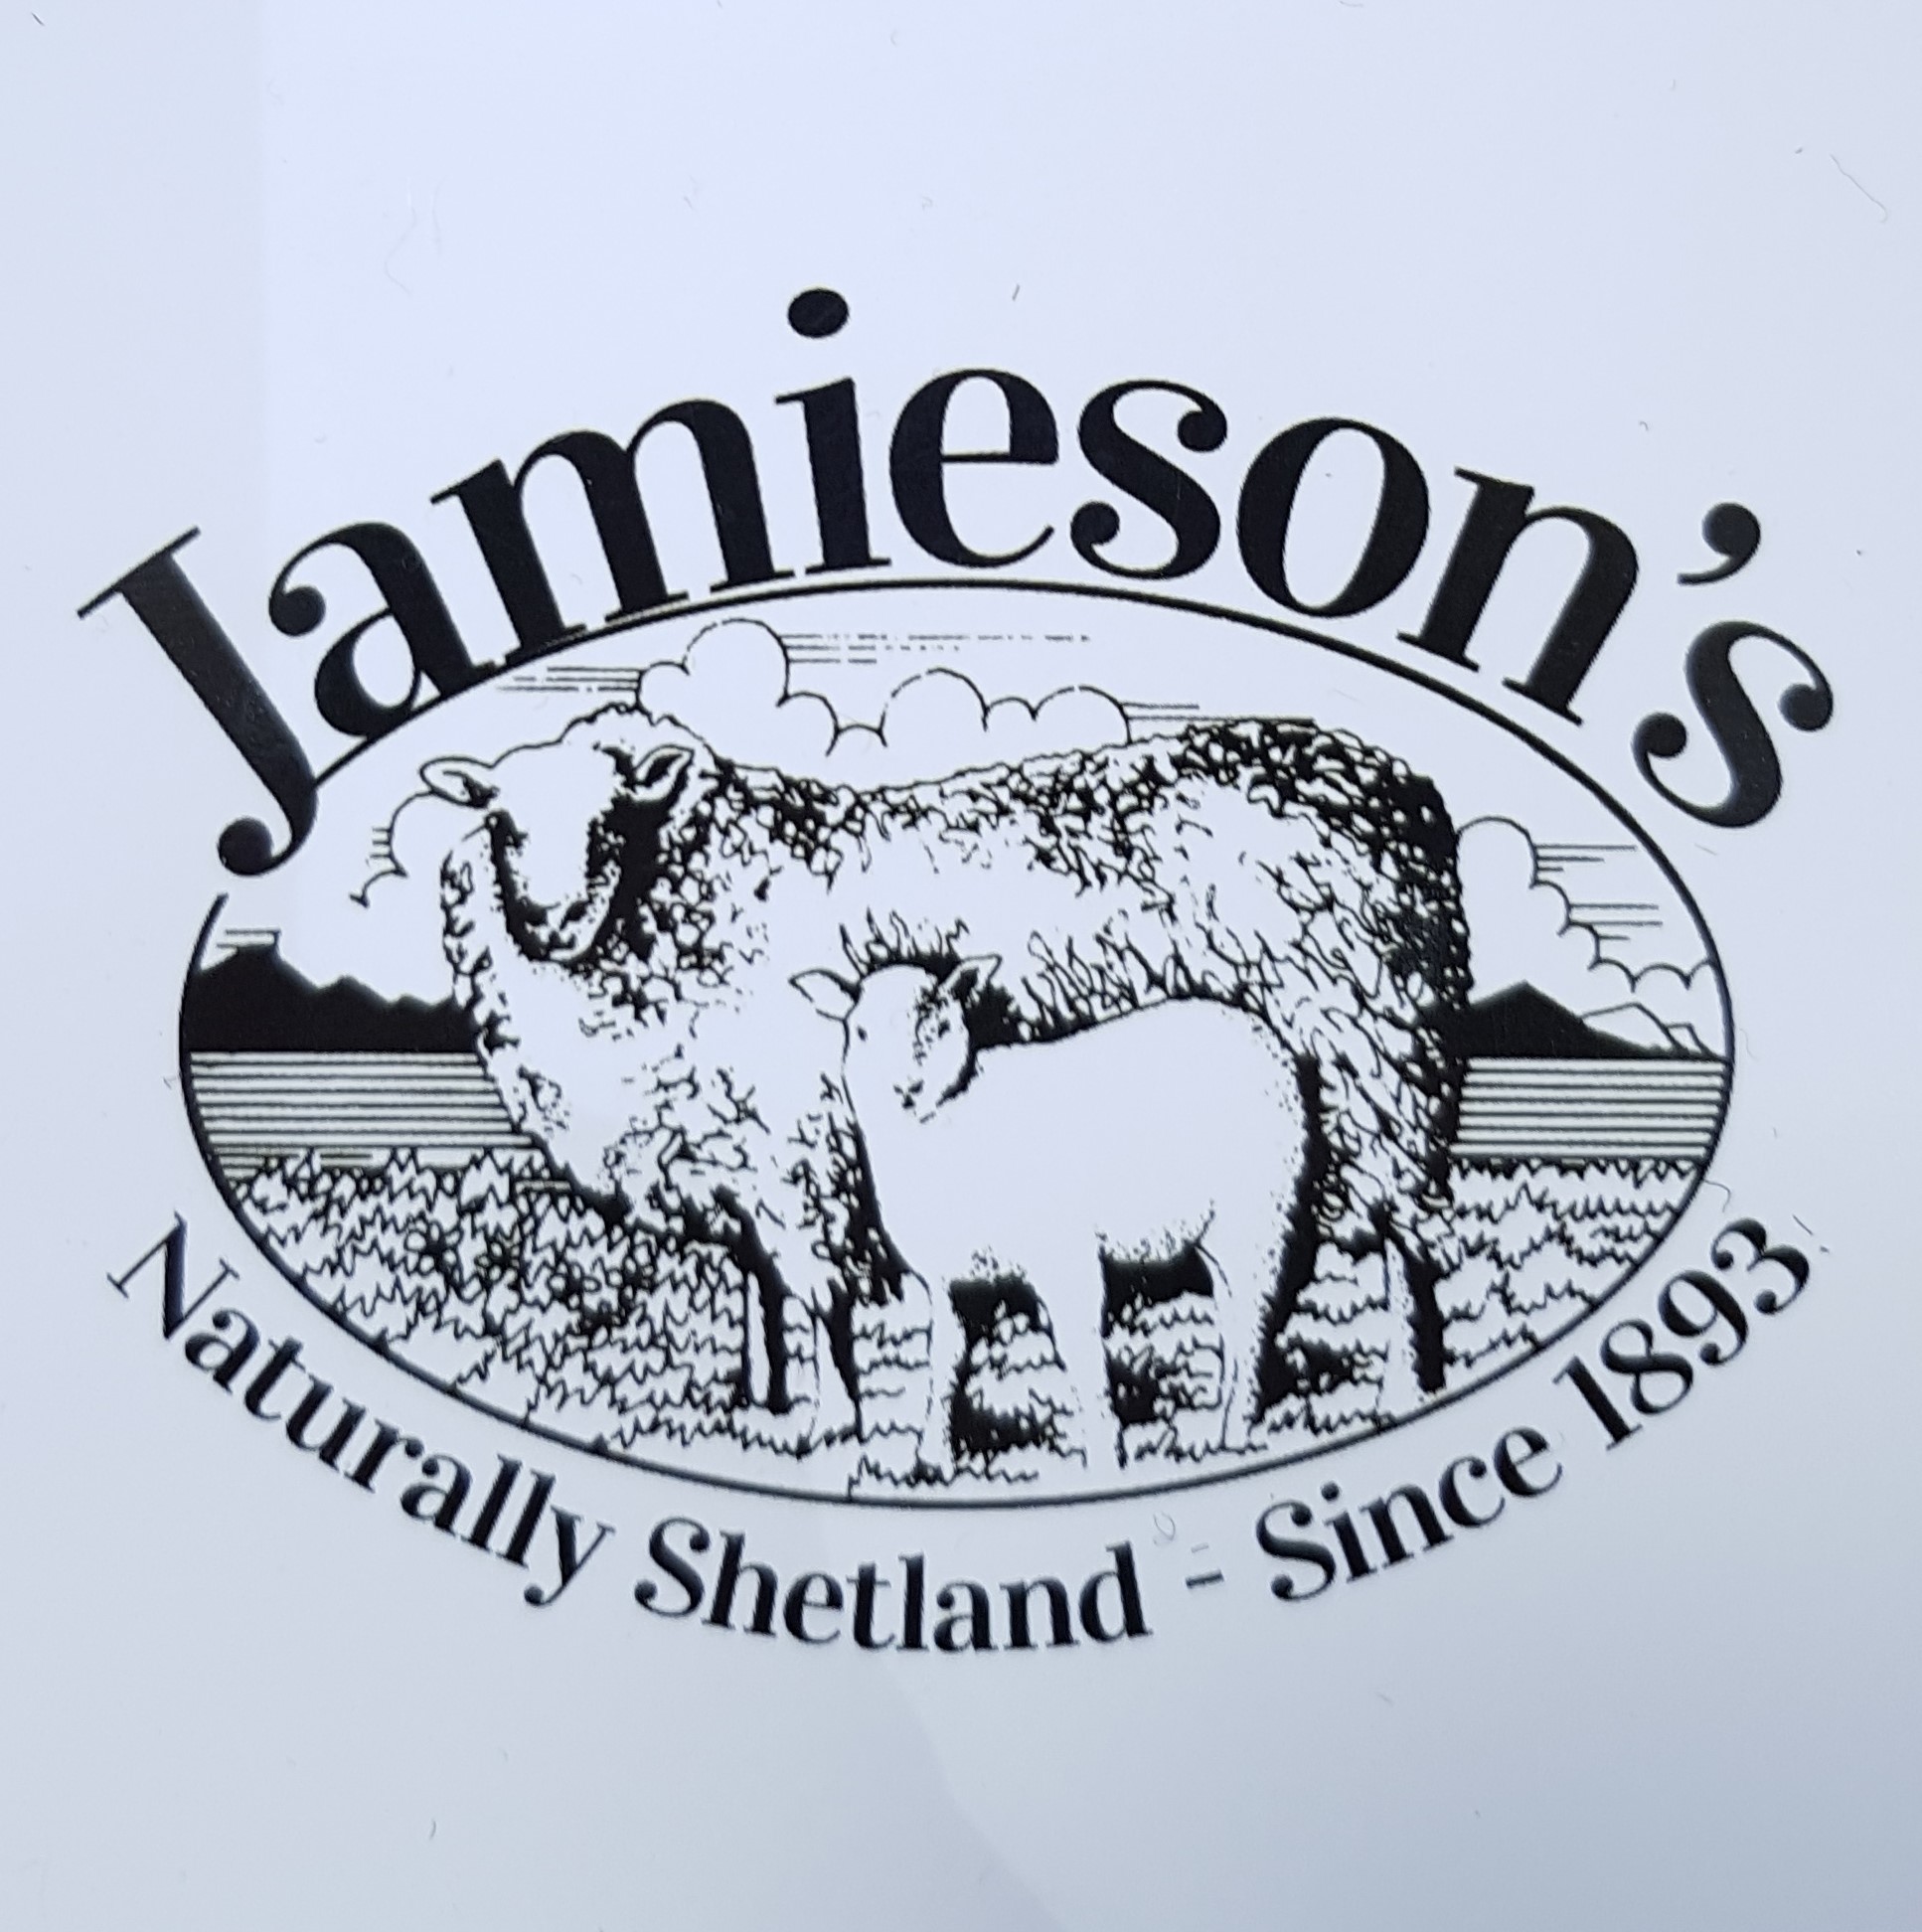 Jamieson's